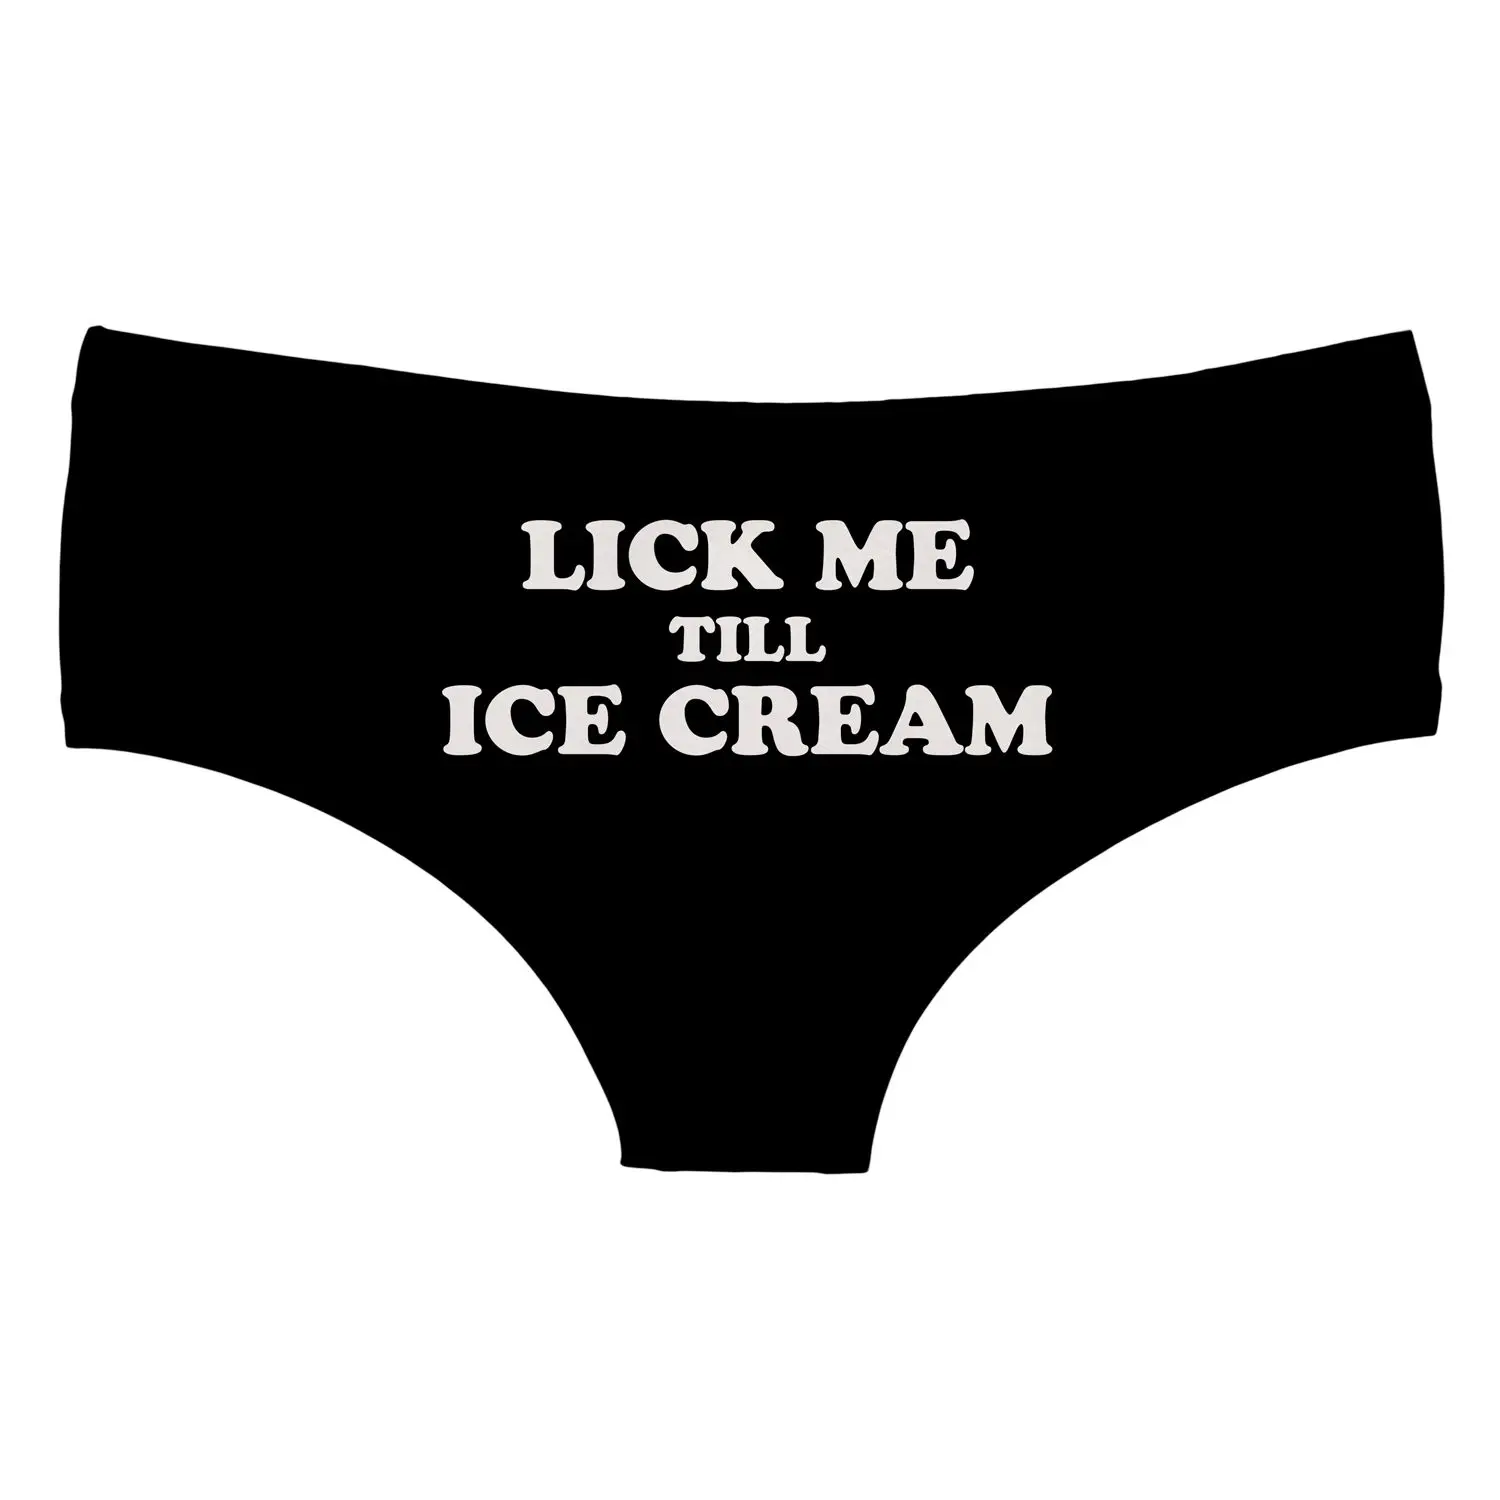 Lick Me, мороженое, черное, сексуальное, английское, миры, принт, горячее, женское нижнее белье, стринги, трусы, нижнее белье для женщин, милые трусики для леди